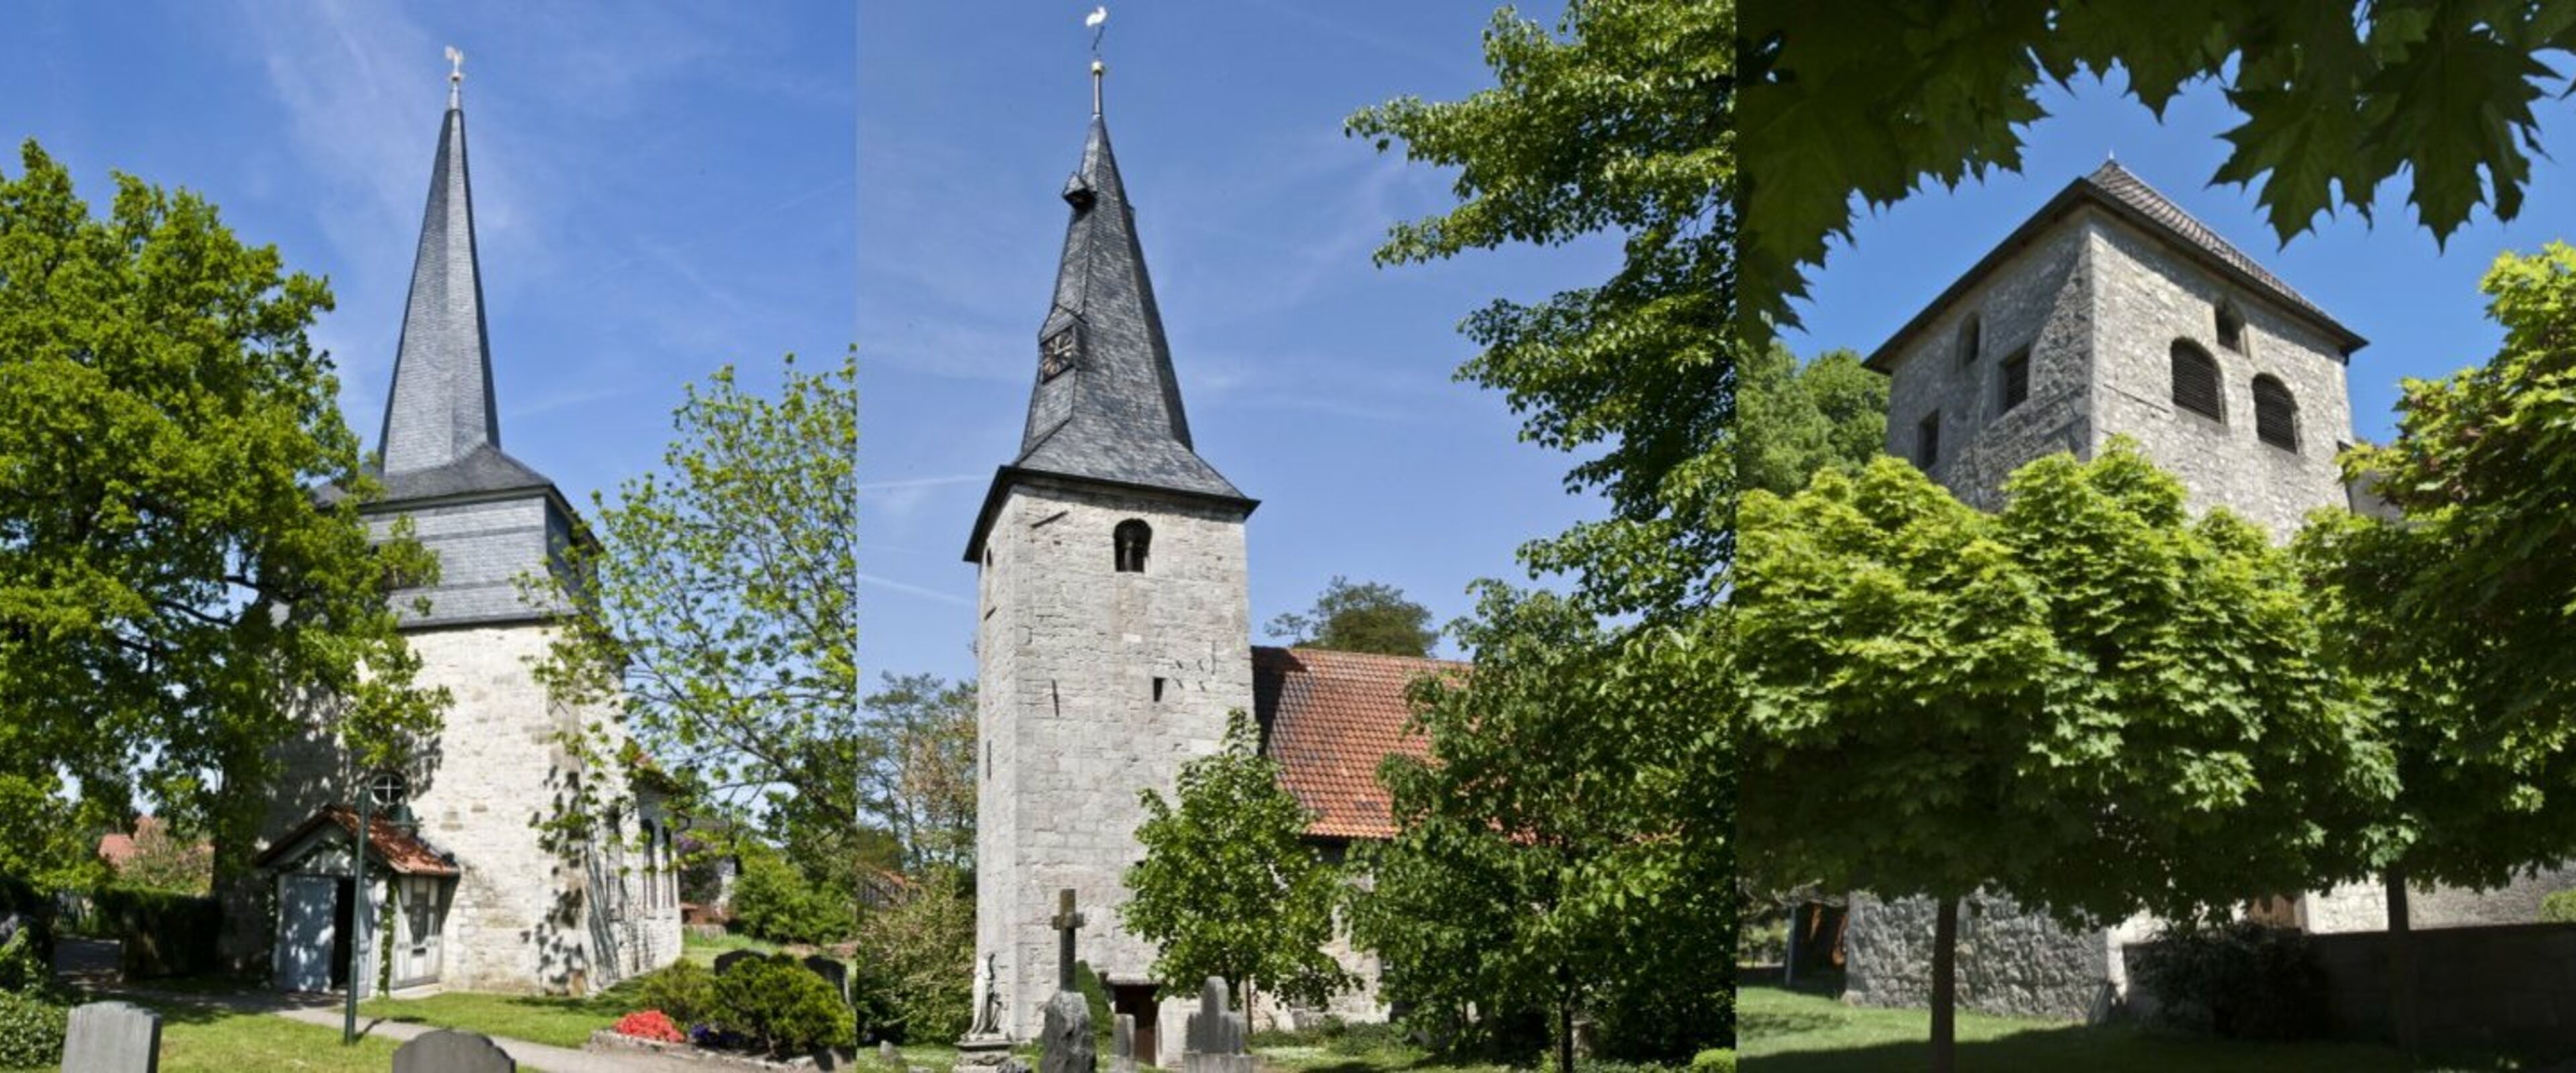 Collage für Startseite, Kirchen Wassel, Bledeln, Gr. Lobke